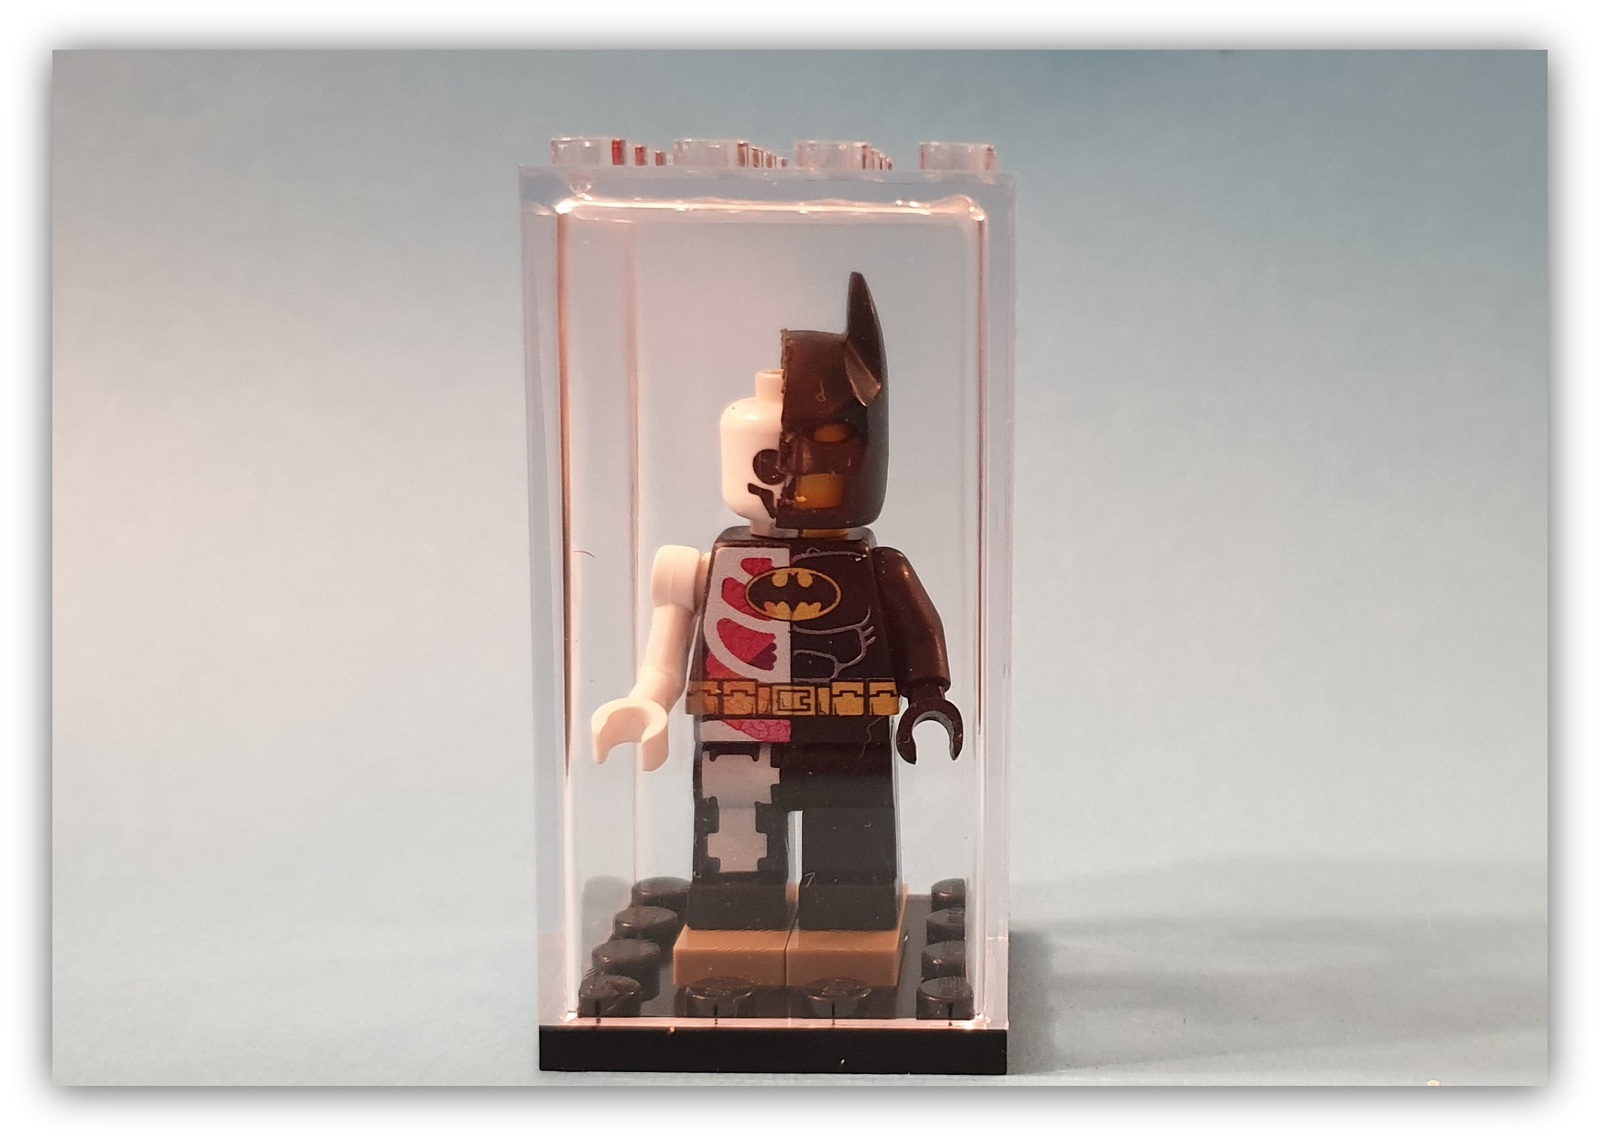 Display Case Frame for Lego Hidden Side minifigures no figures